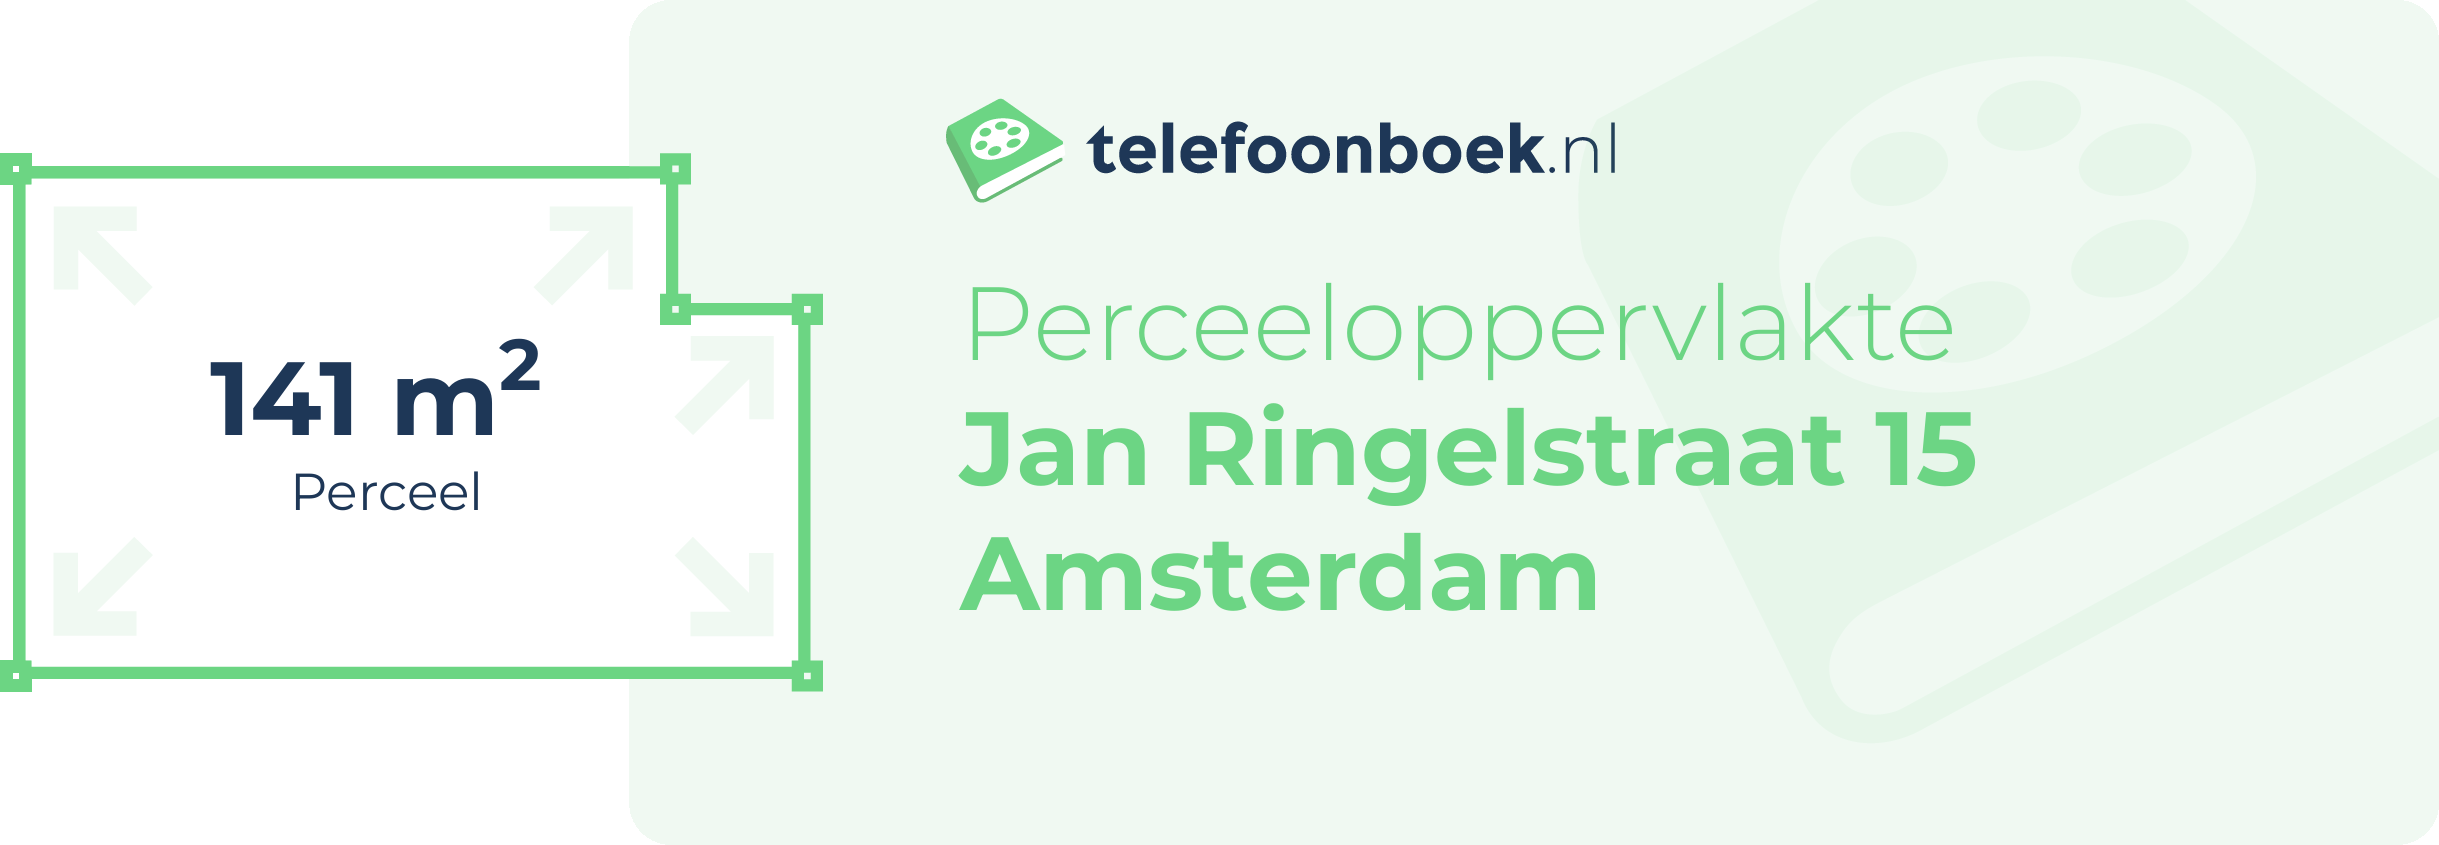 Perceeloppervlakte Jan Ringelstraat 15 Amsterdam